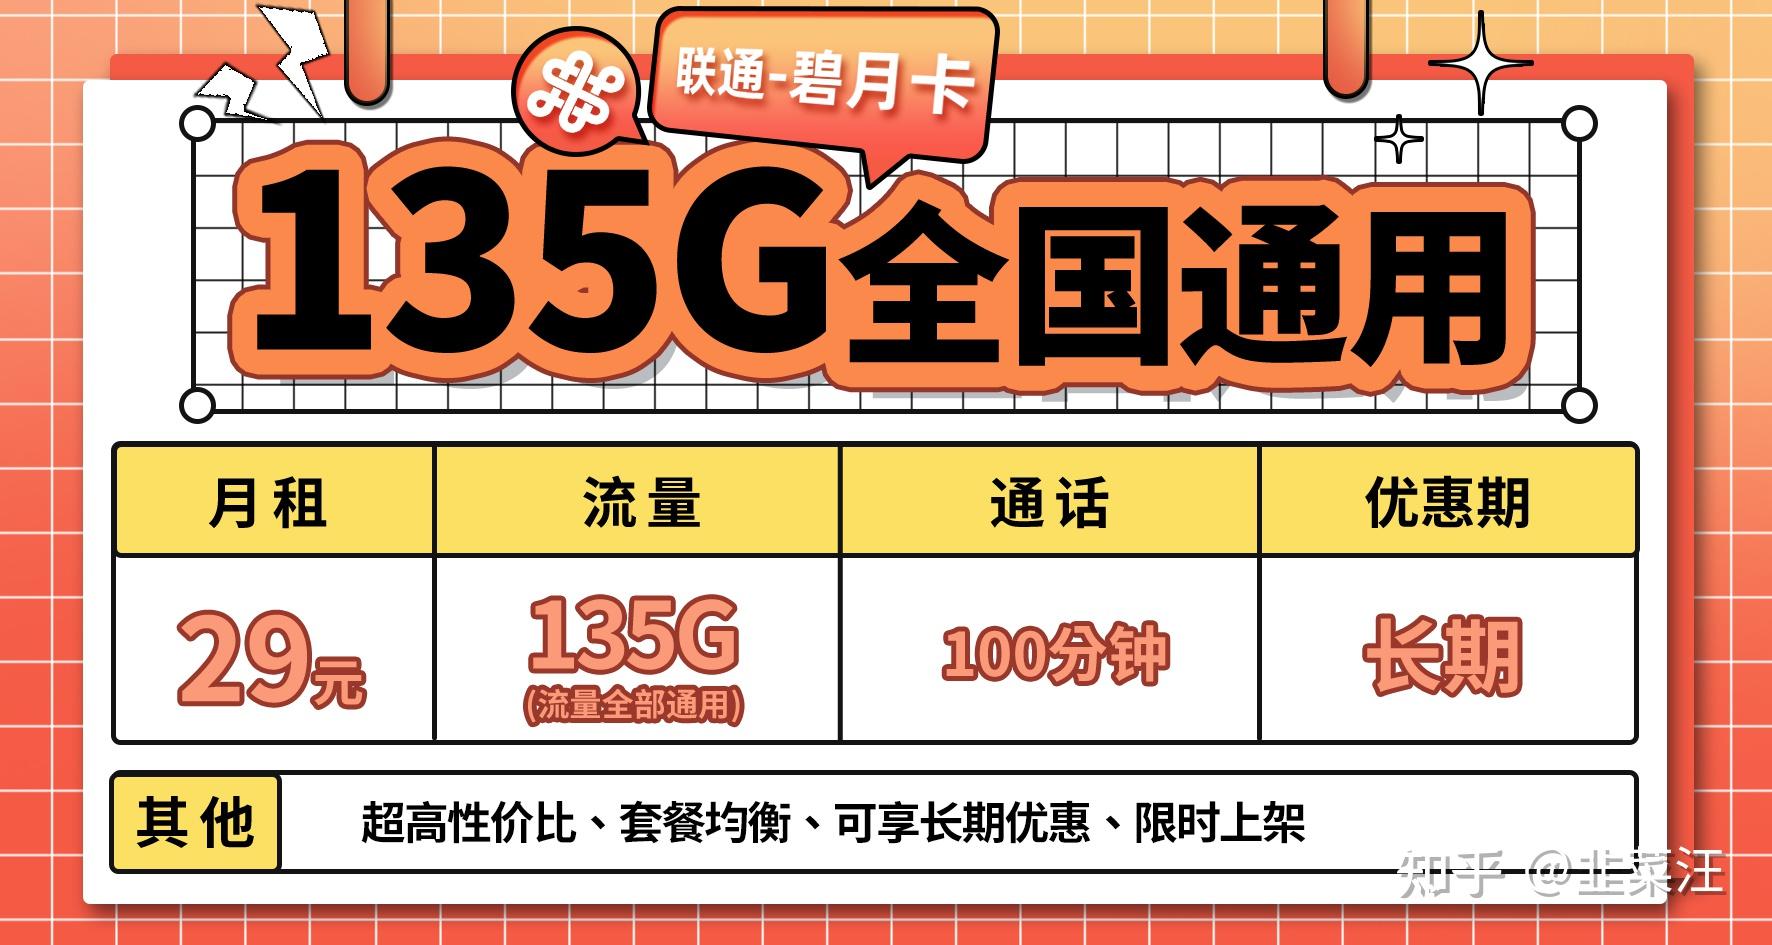 杭州 5G 手机价格变化趋势及对生活的影响深度解析  第1张